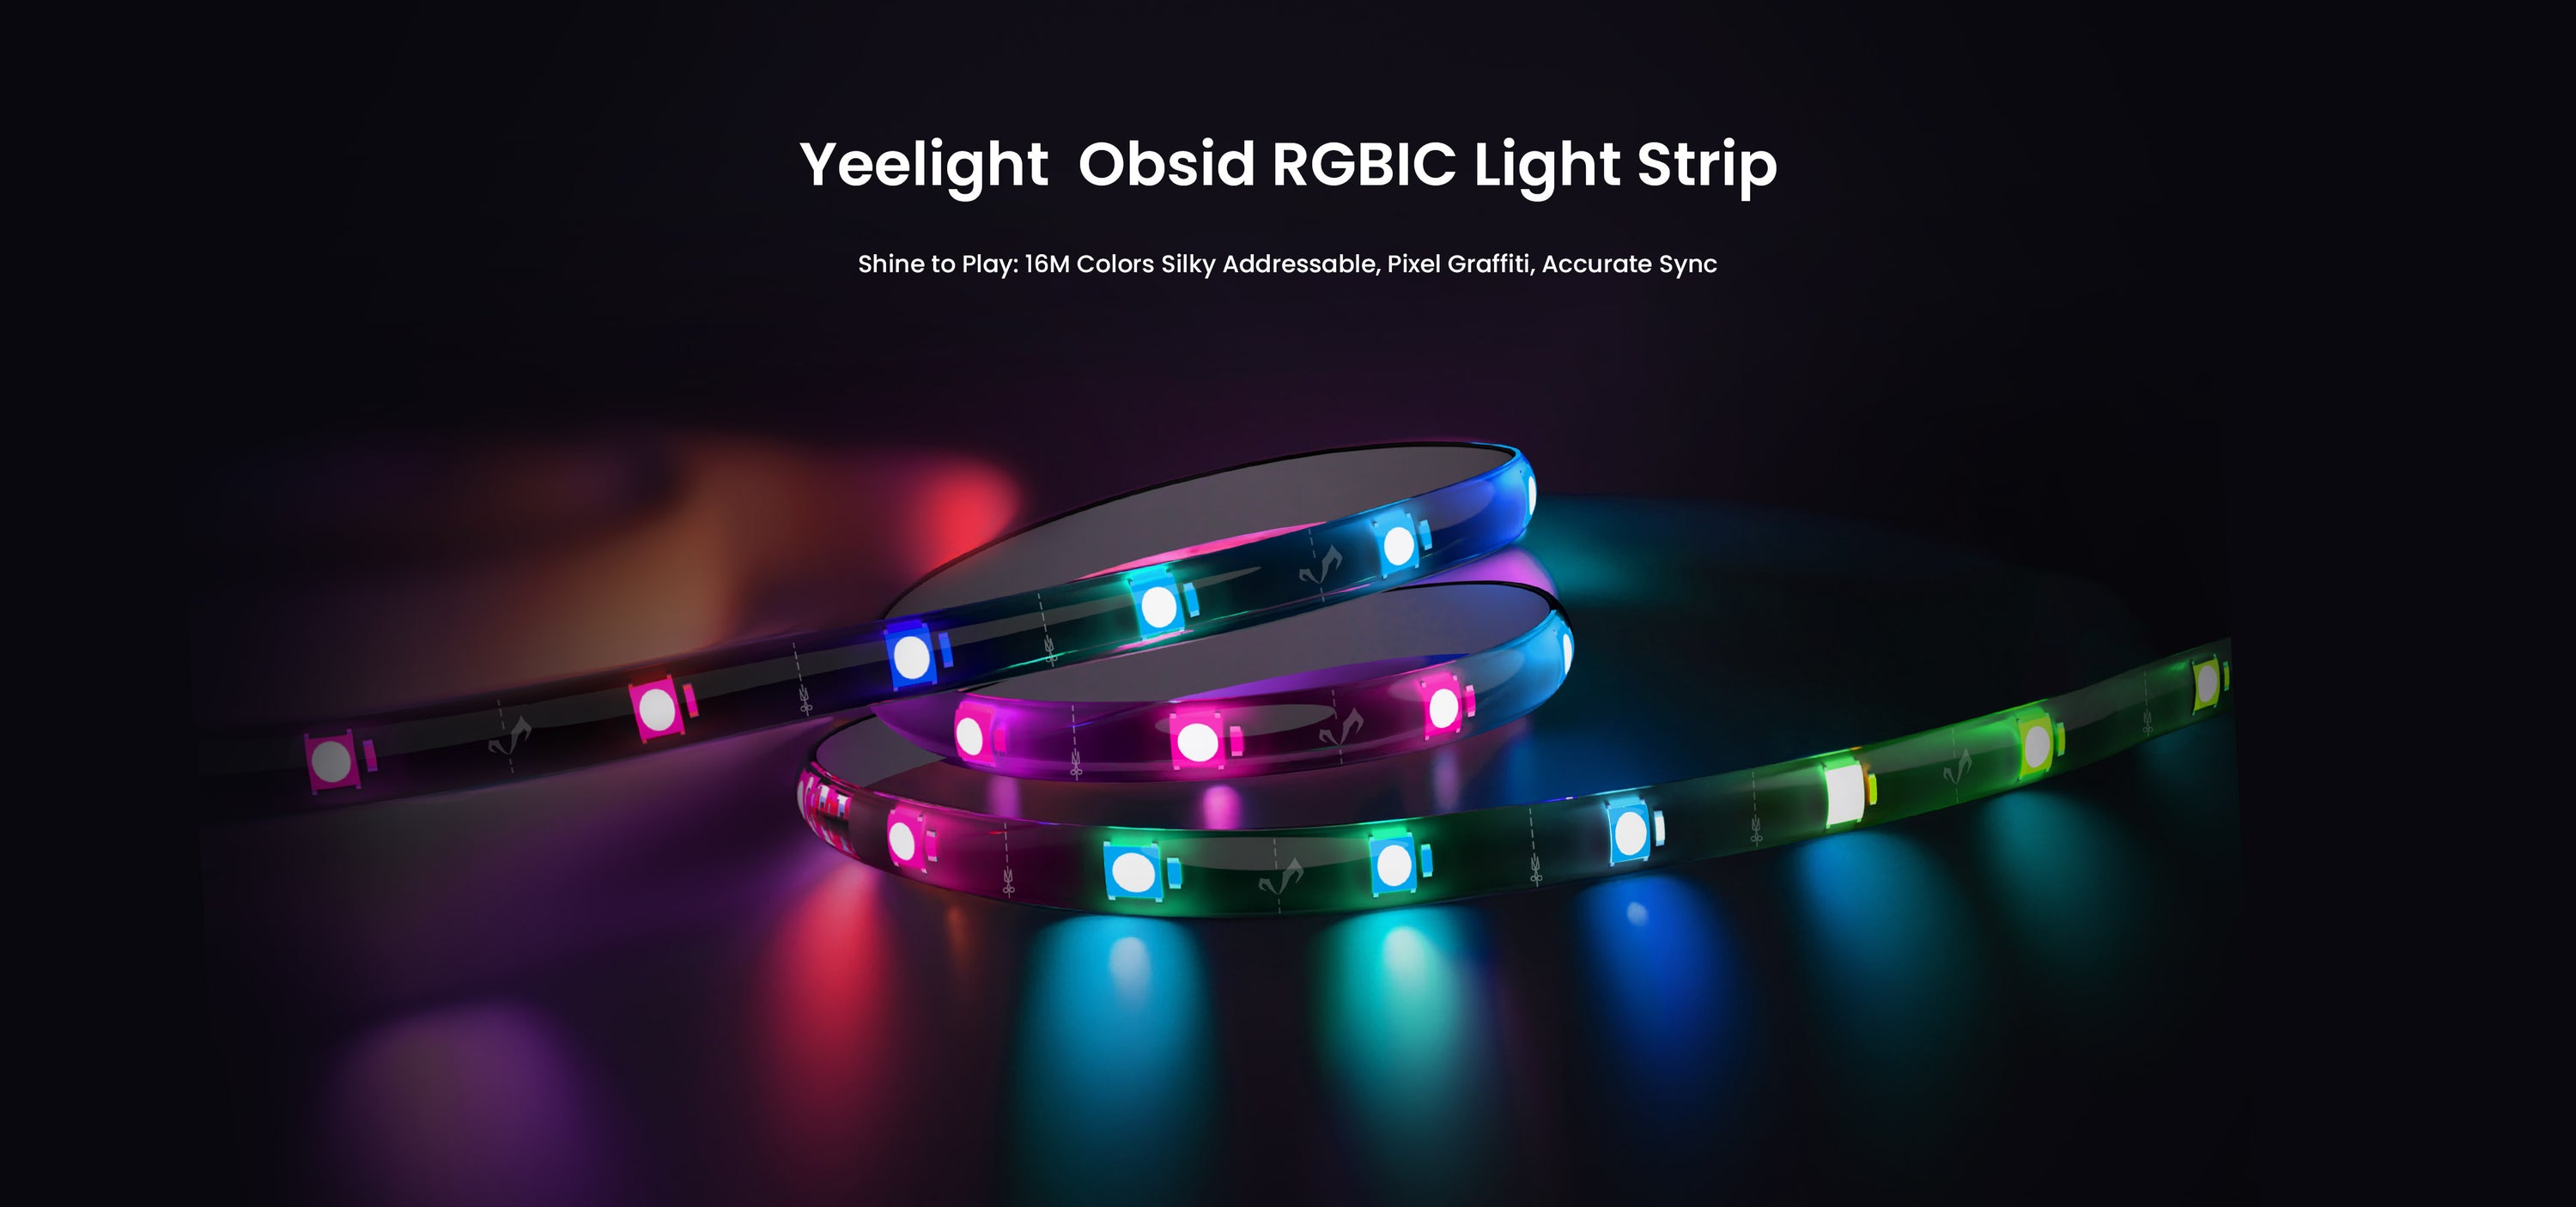 Yeelight kondigde de Obsid RGBIC LED Light Strip aan, die kan synchroniseren met muziek en games